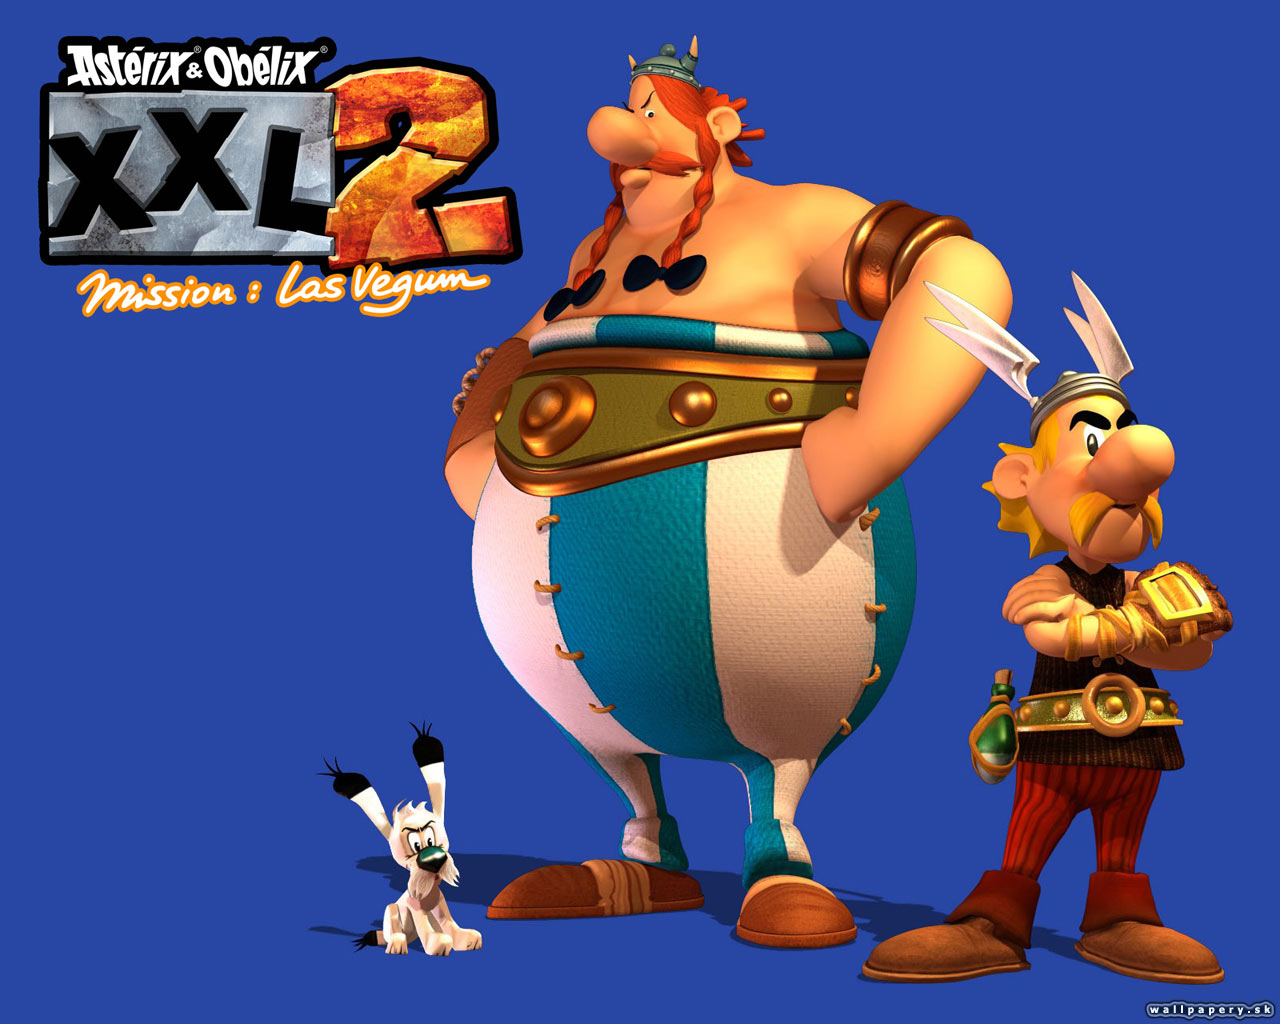 Asterix & Obelix XXL 2: Mission Las Vegum - wallpaper 6